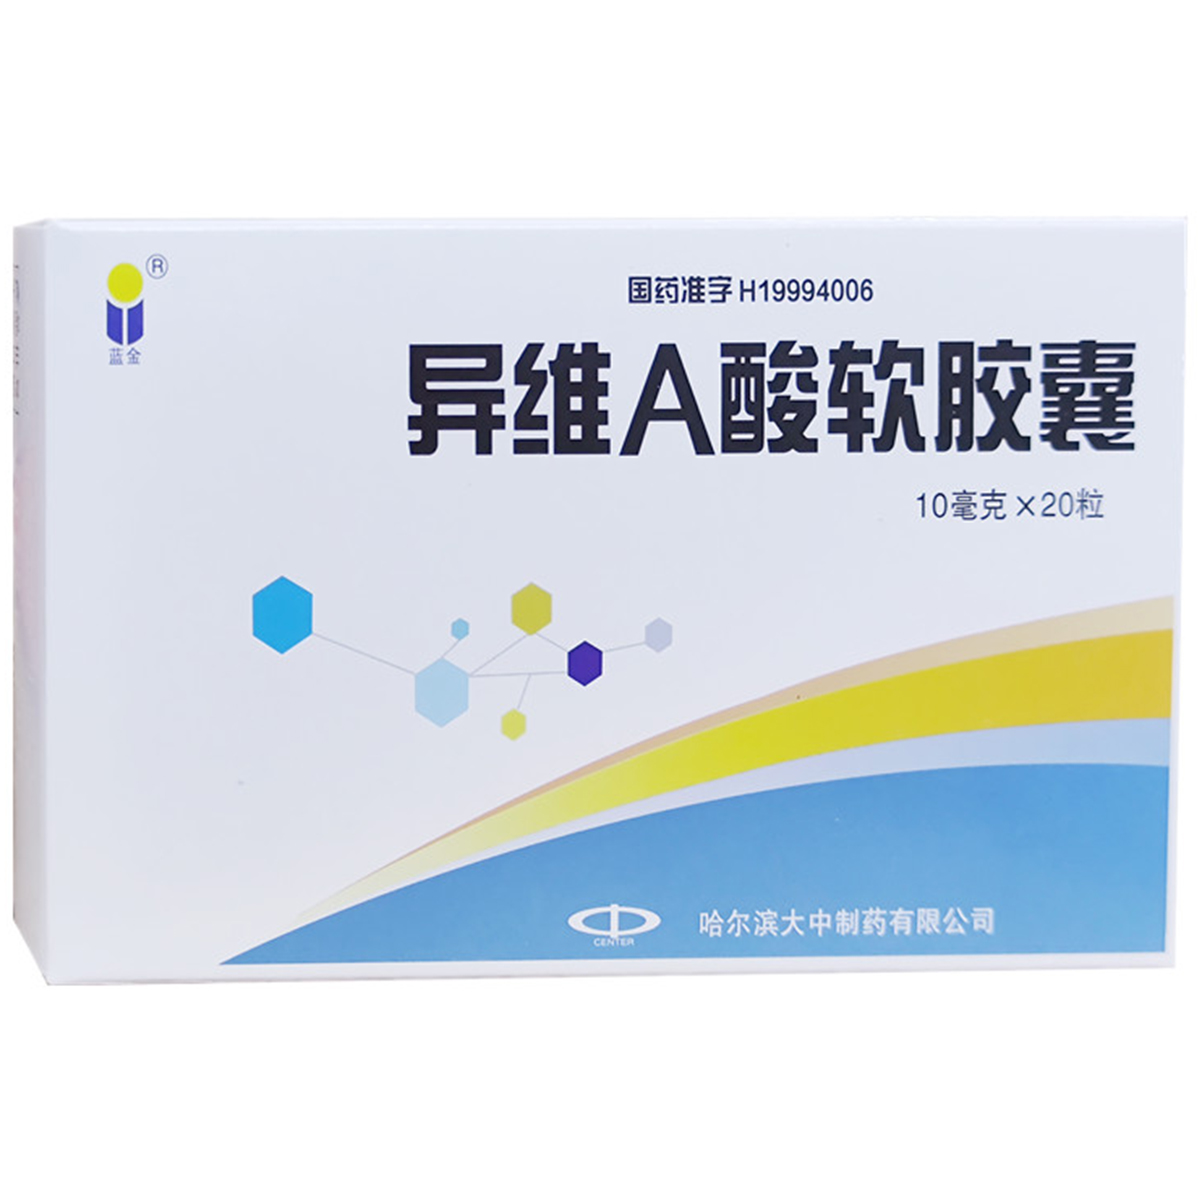 蓝金 异维a酸软胶囊 10mg*20粒/盒 适用于重度难治性结节性痤疮